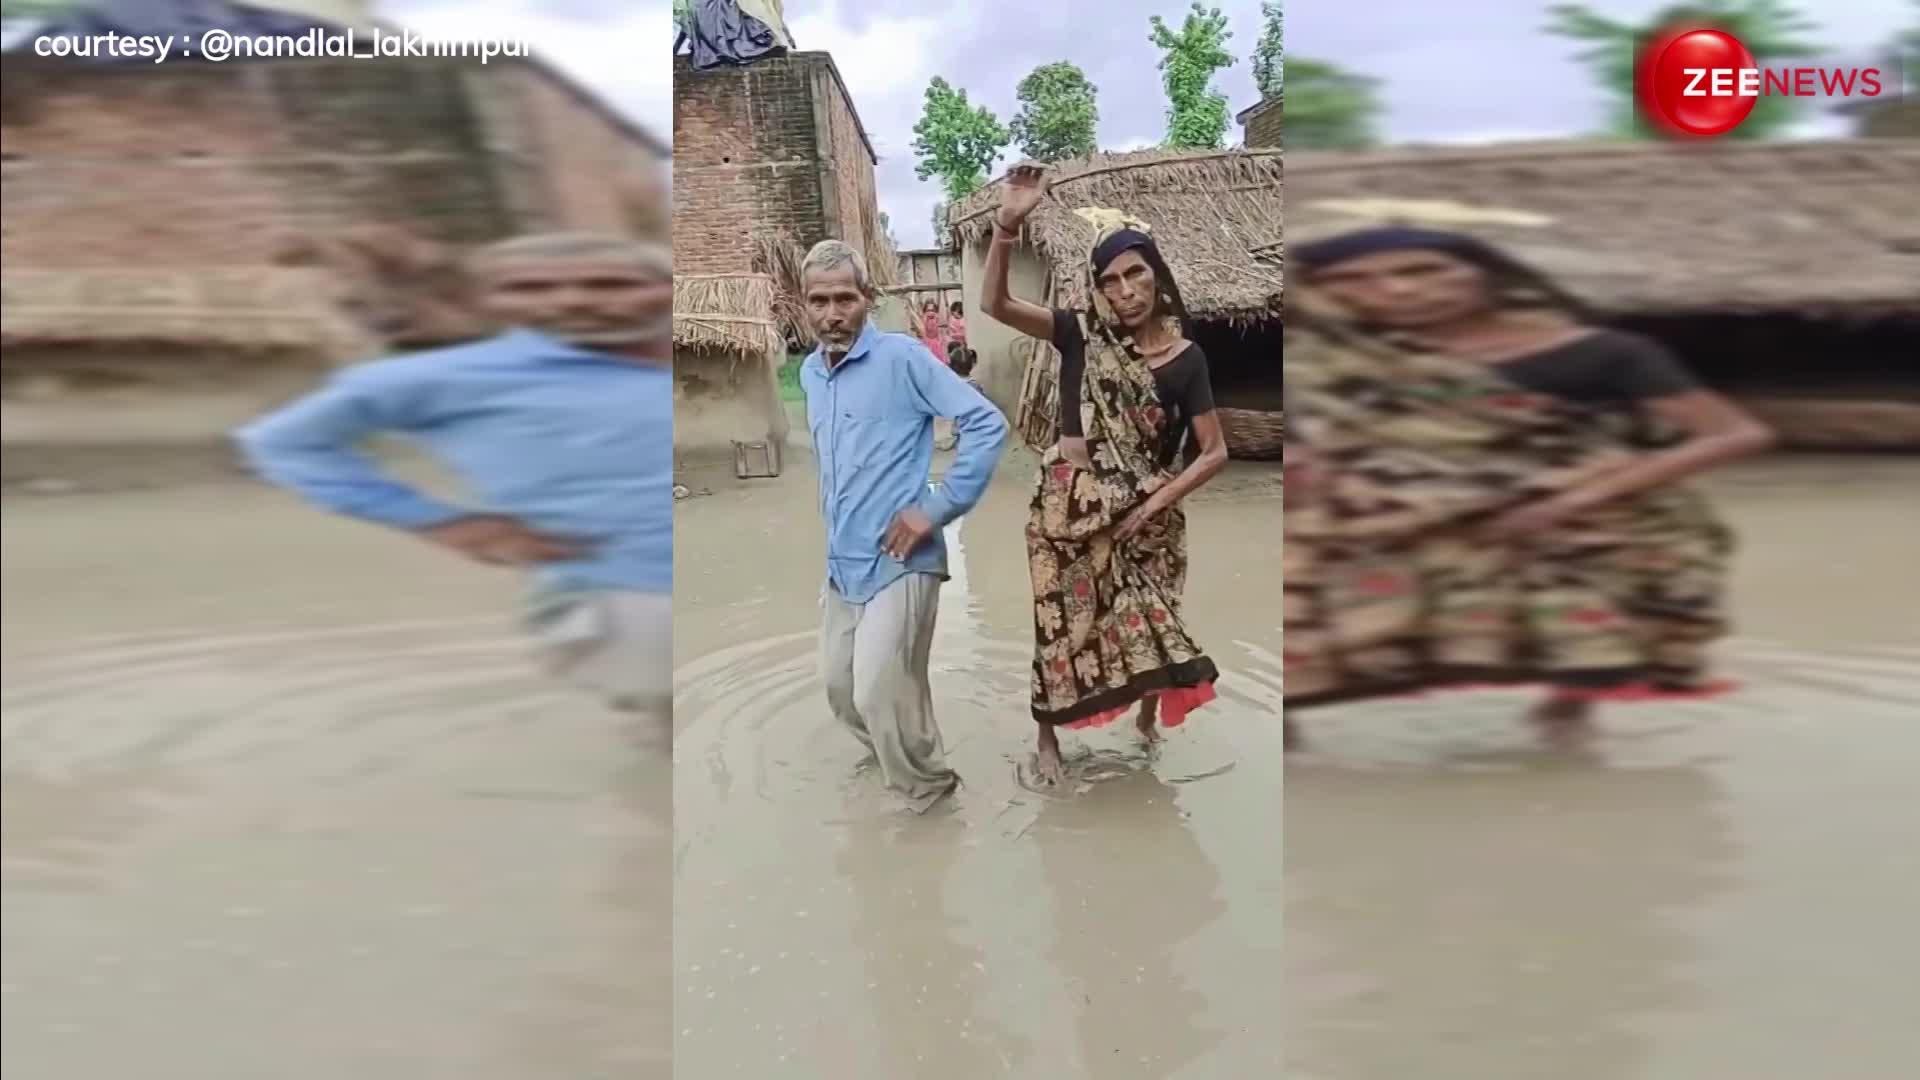 उम्र का कोई बंधन नहीं! अंकल-आंटी ने डांस कर बारिश में बिखेर दिया जलवा, इंटरनेट पर छा गया VIDEO